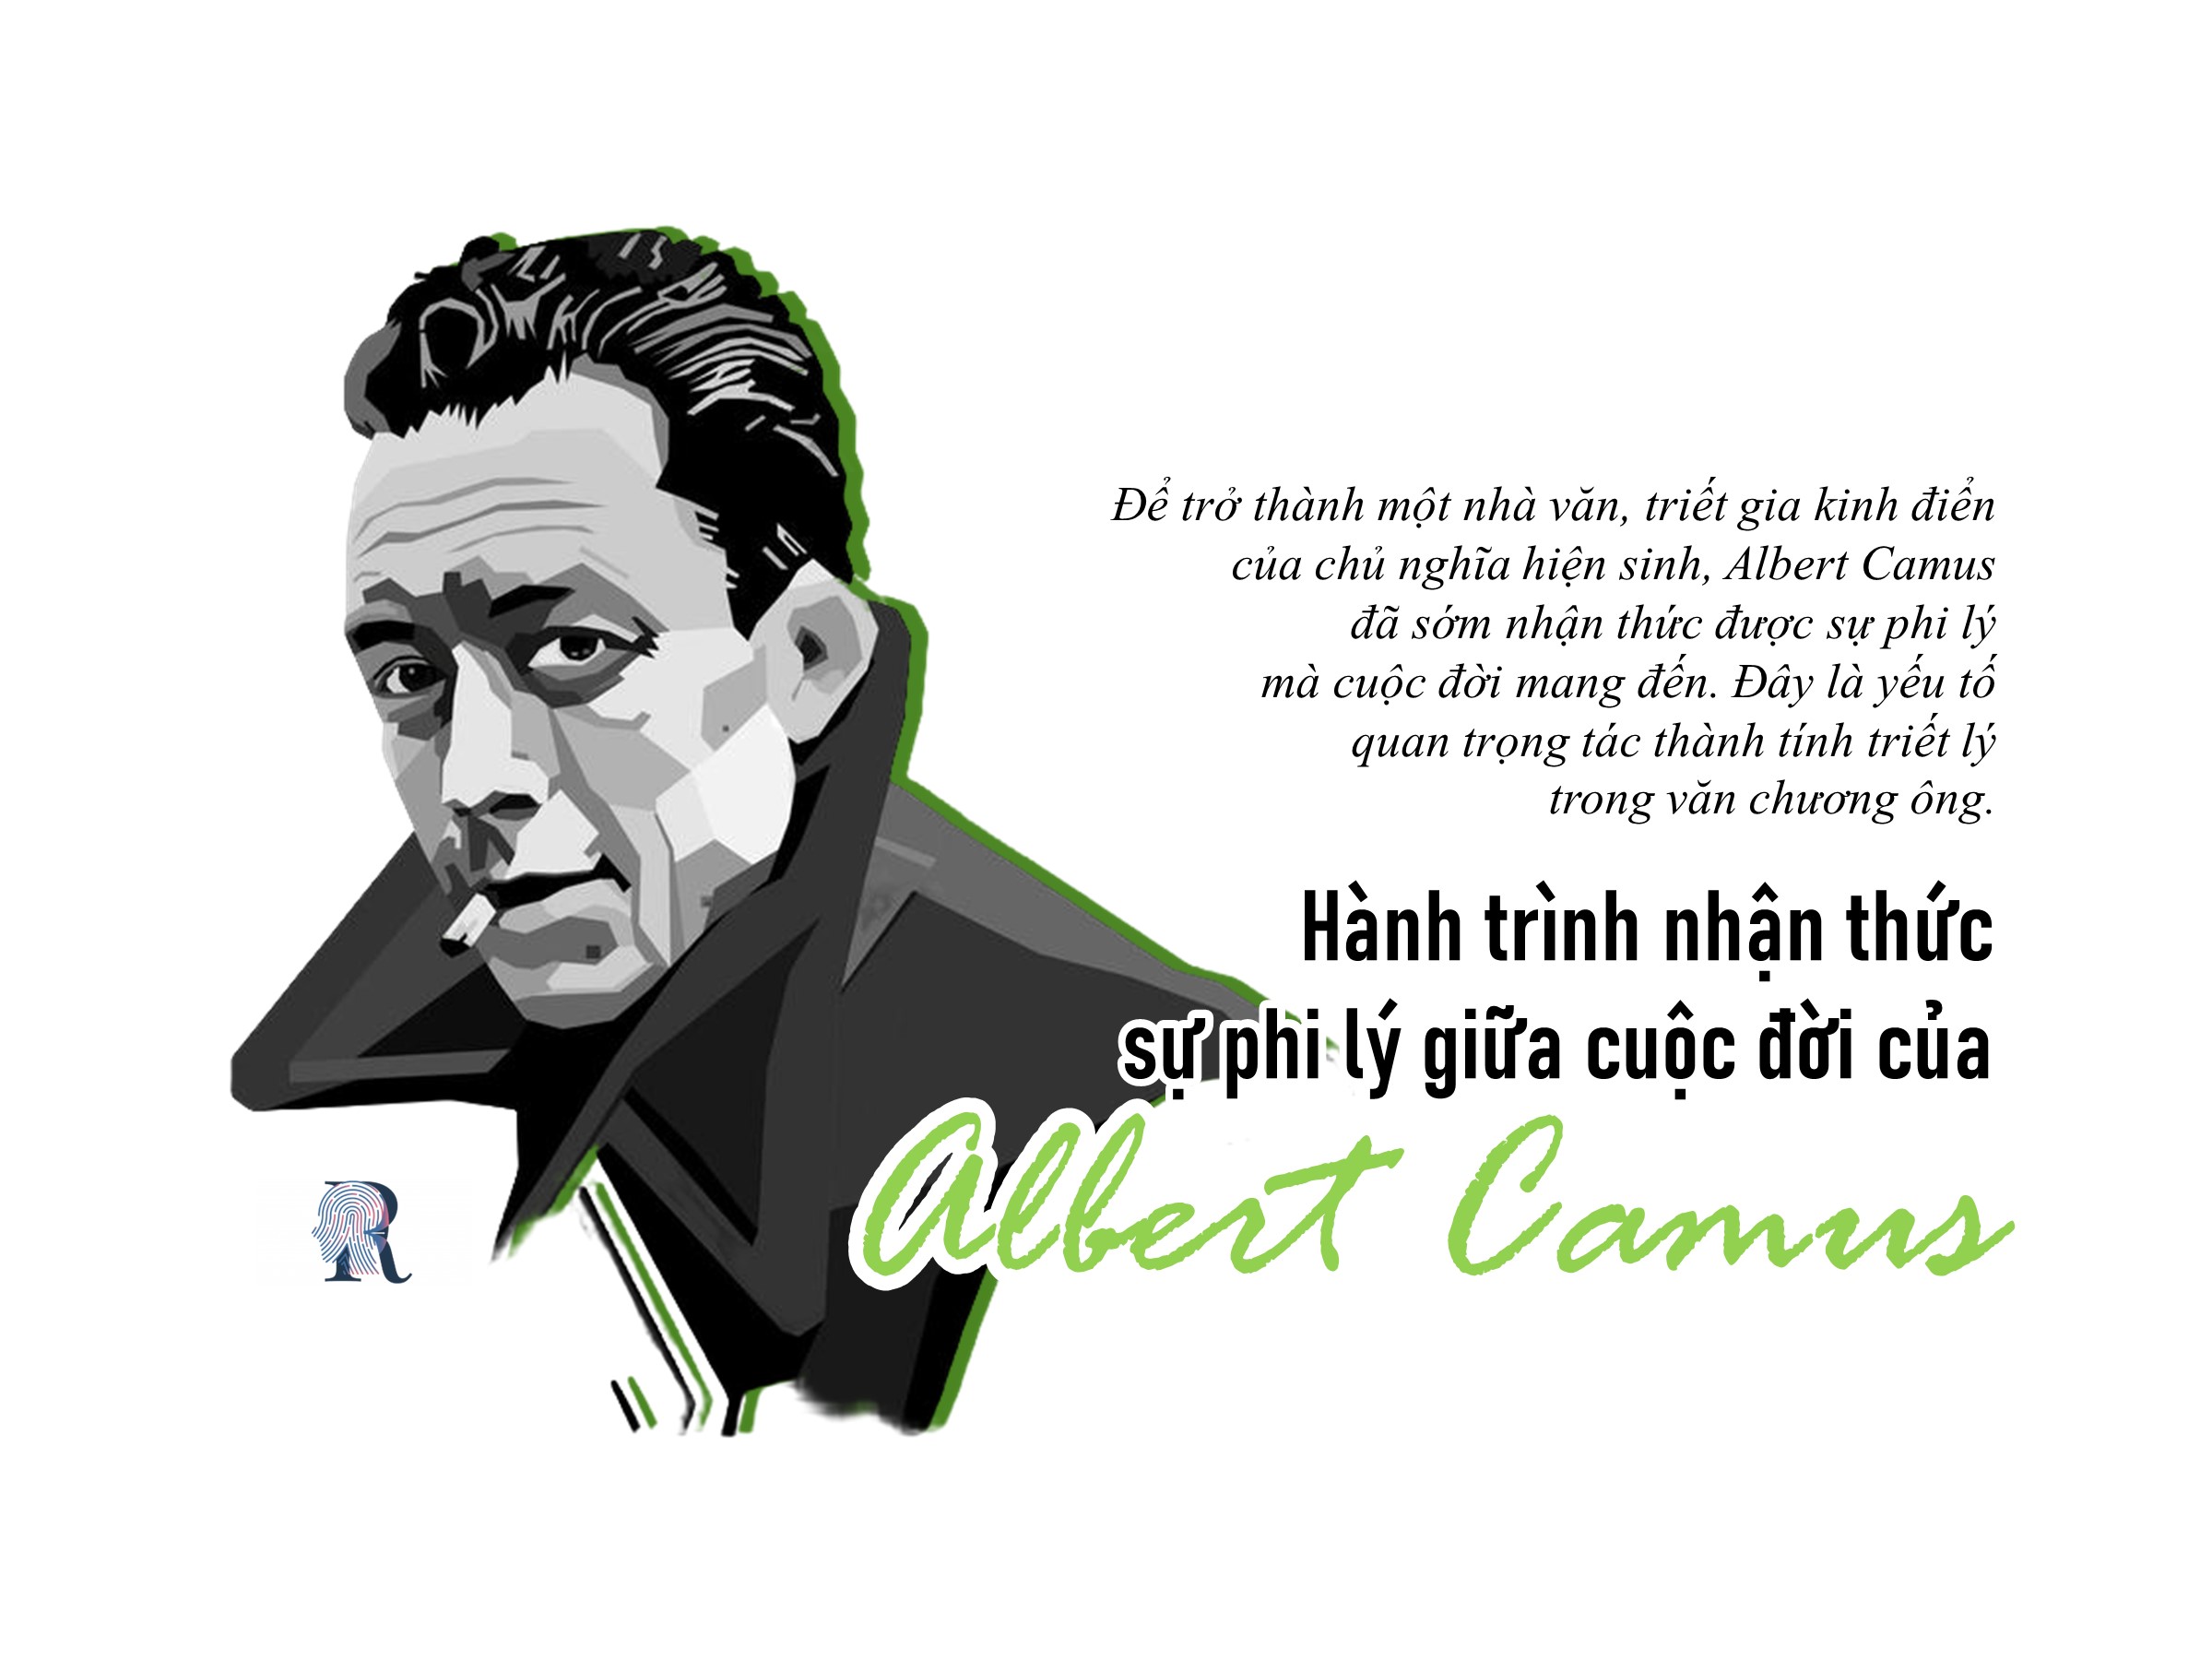 Hành trình nhận thức sự phi lý giữa cuộc đời của Albert Camus